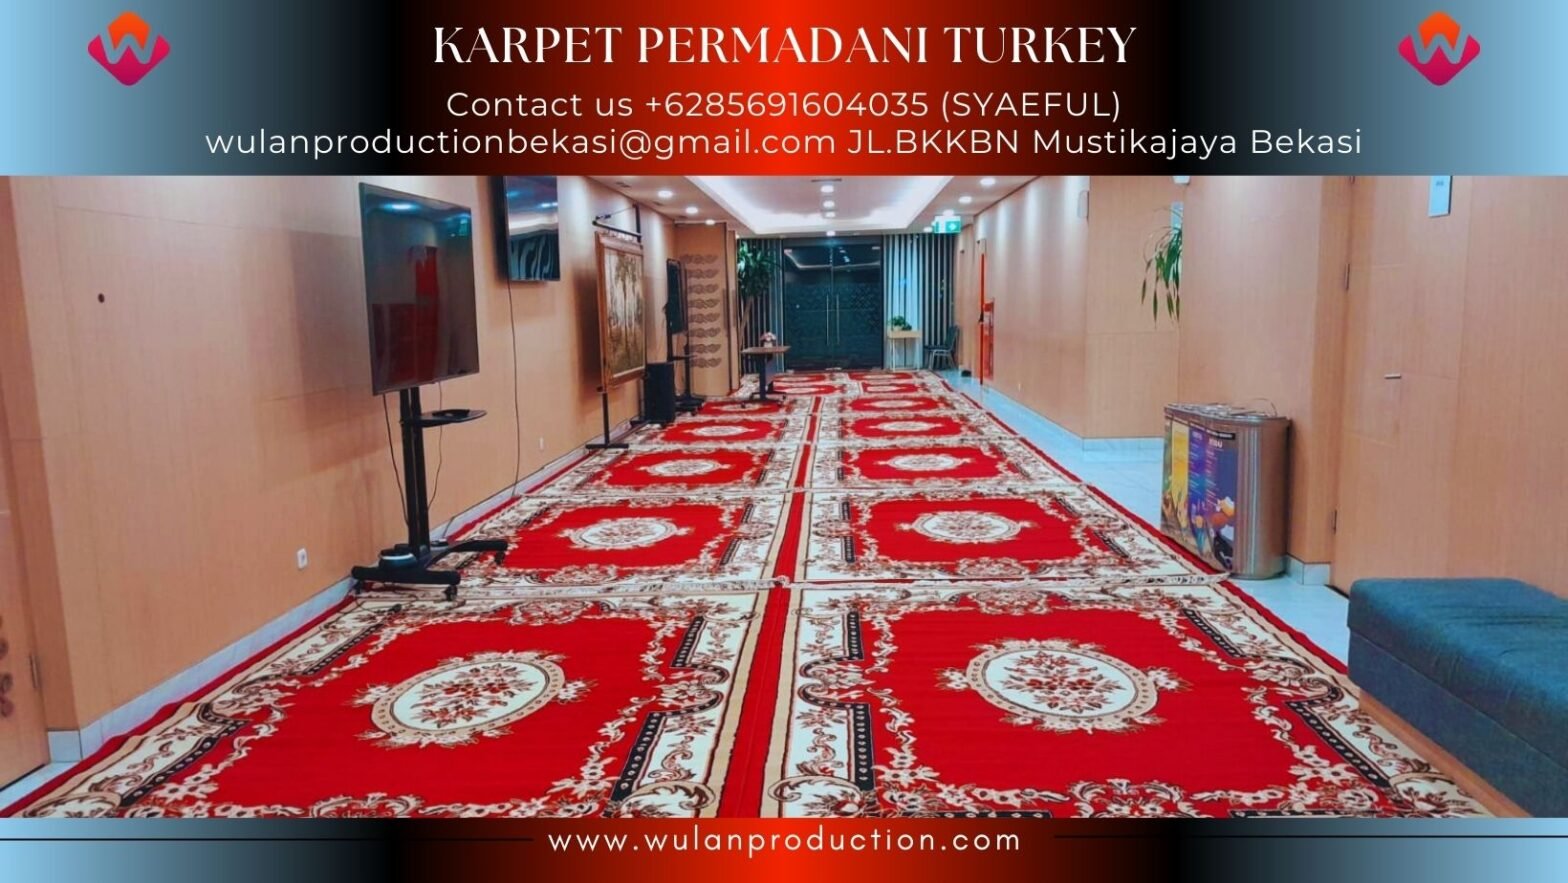 Rental Karpet Turkey Permadani Jakarta